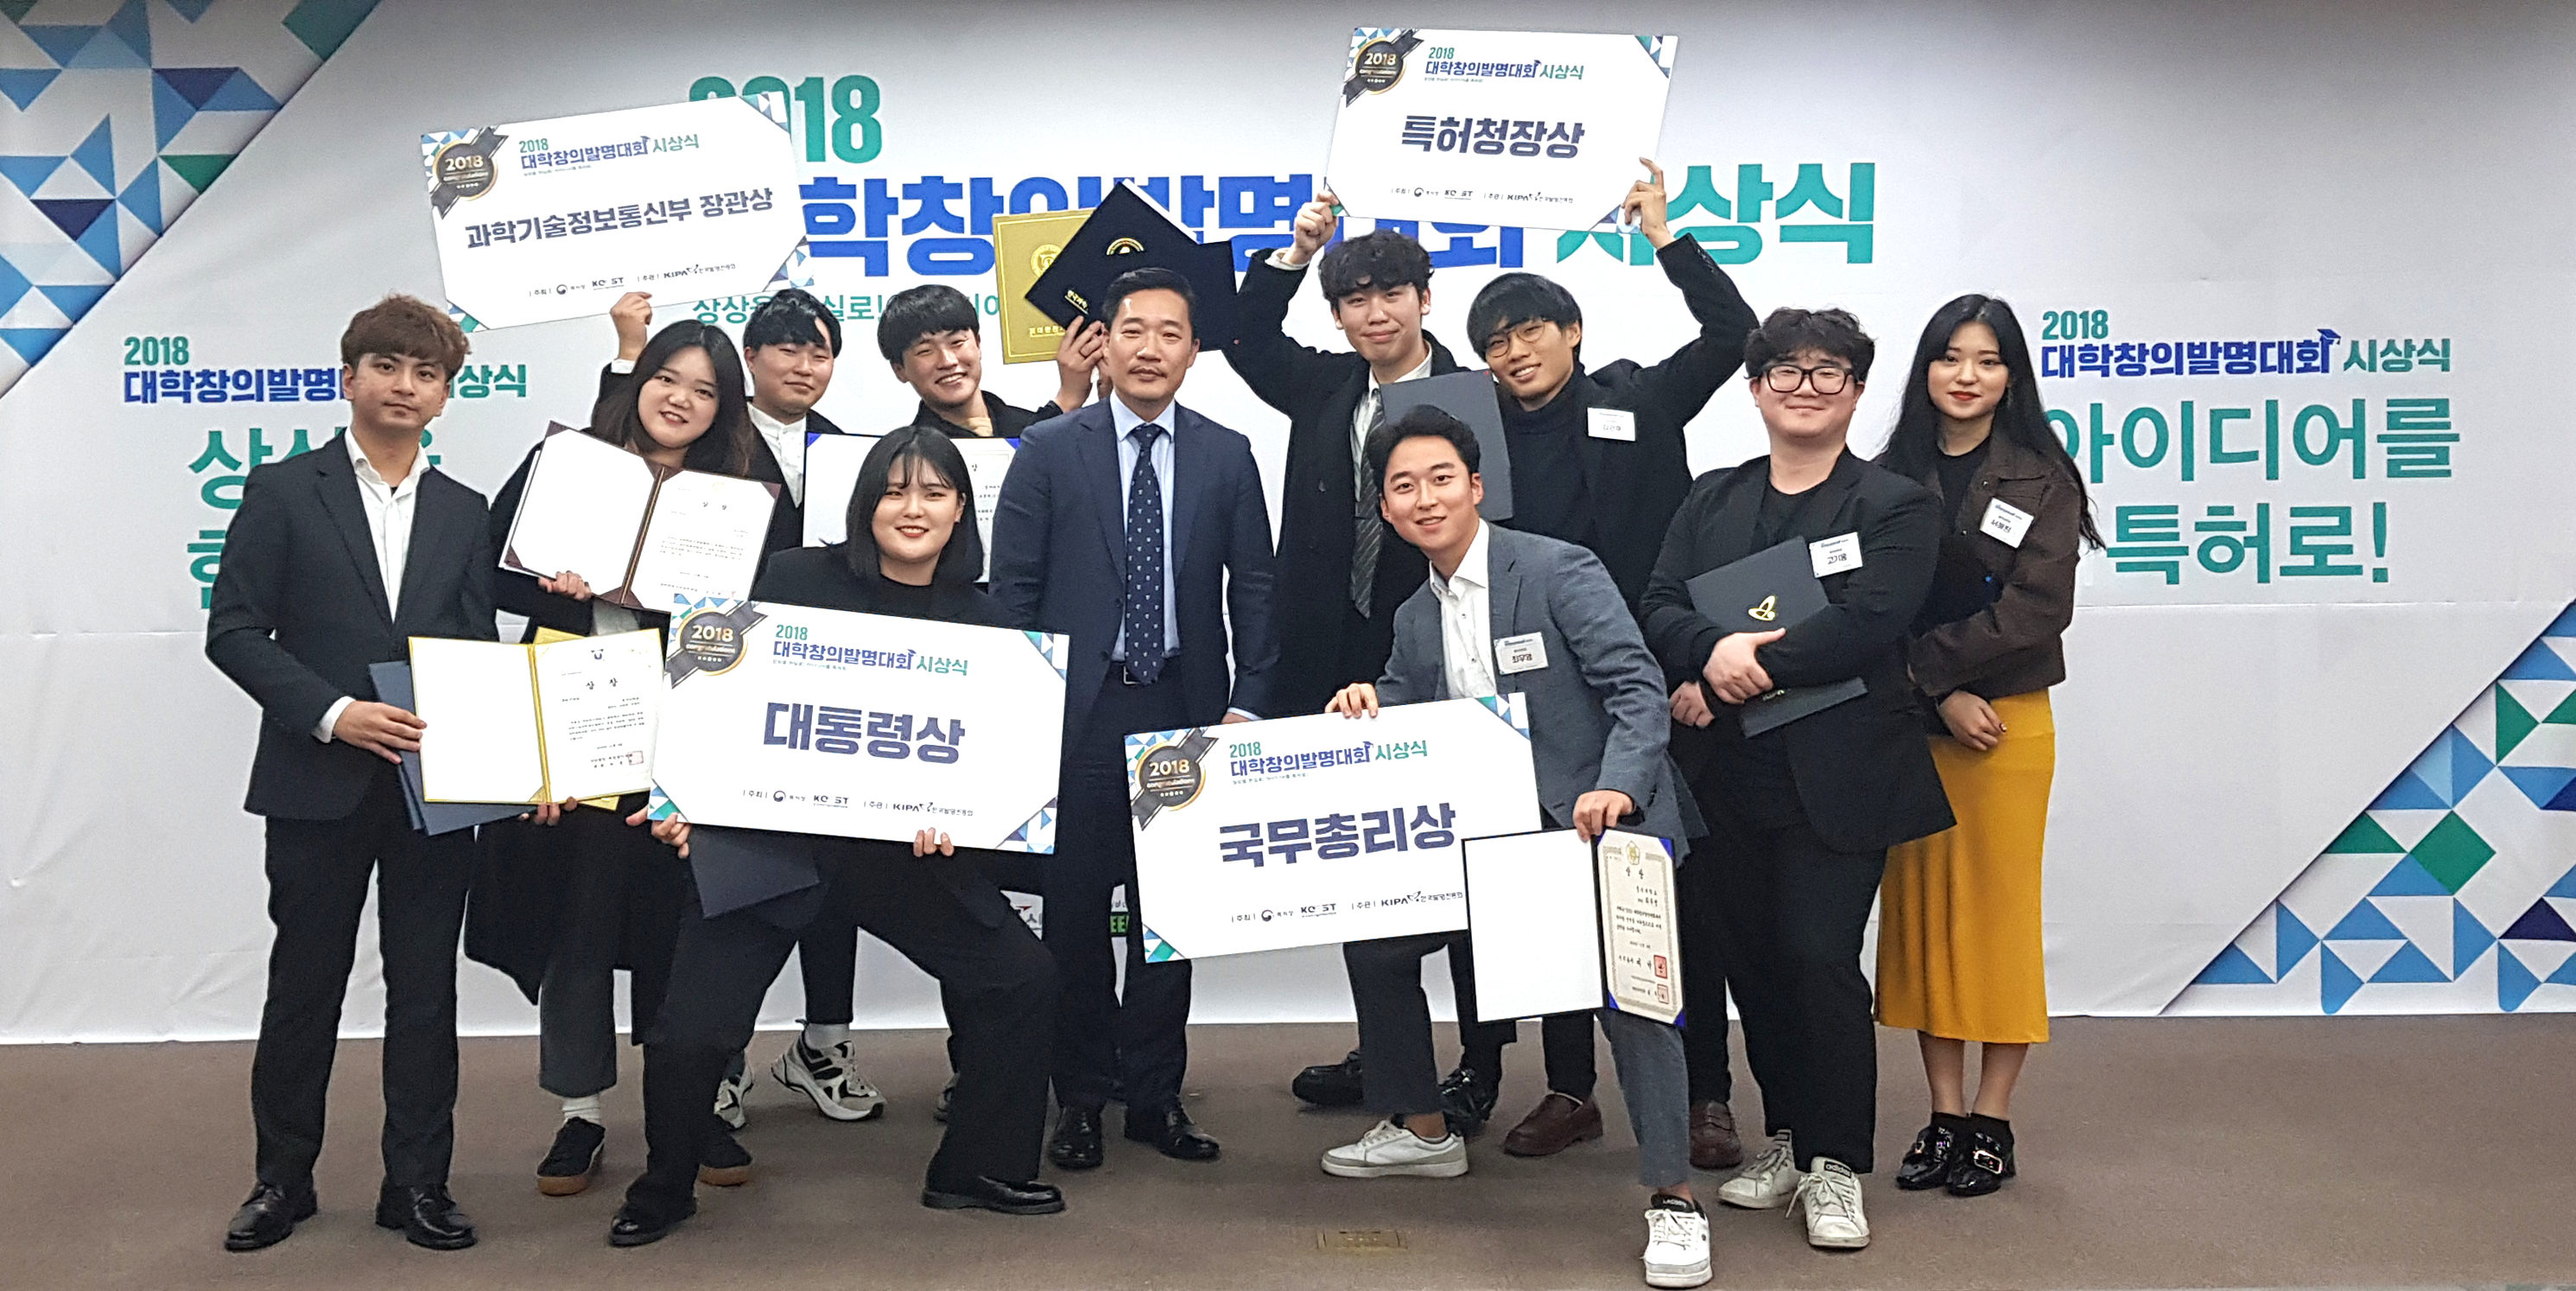 청주대학교가 지난 8일 서울 한국지식재산센터 국제회의실에서 열린 2018 대학창의발명대회 시상식에서 기념촬영을 하고 있다.